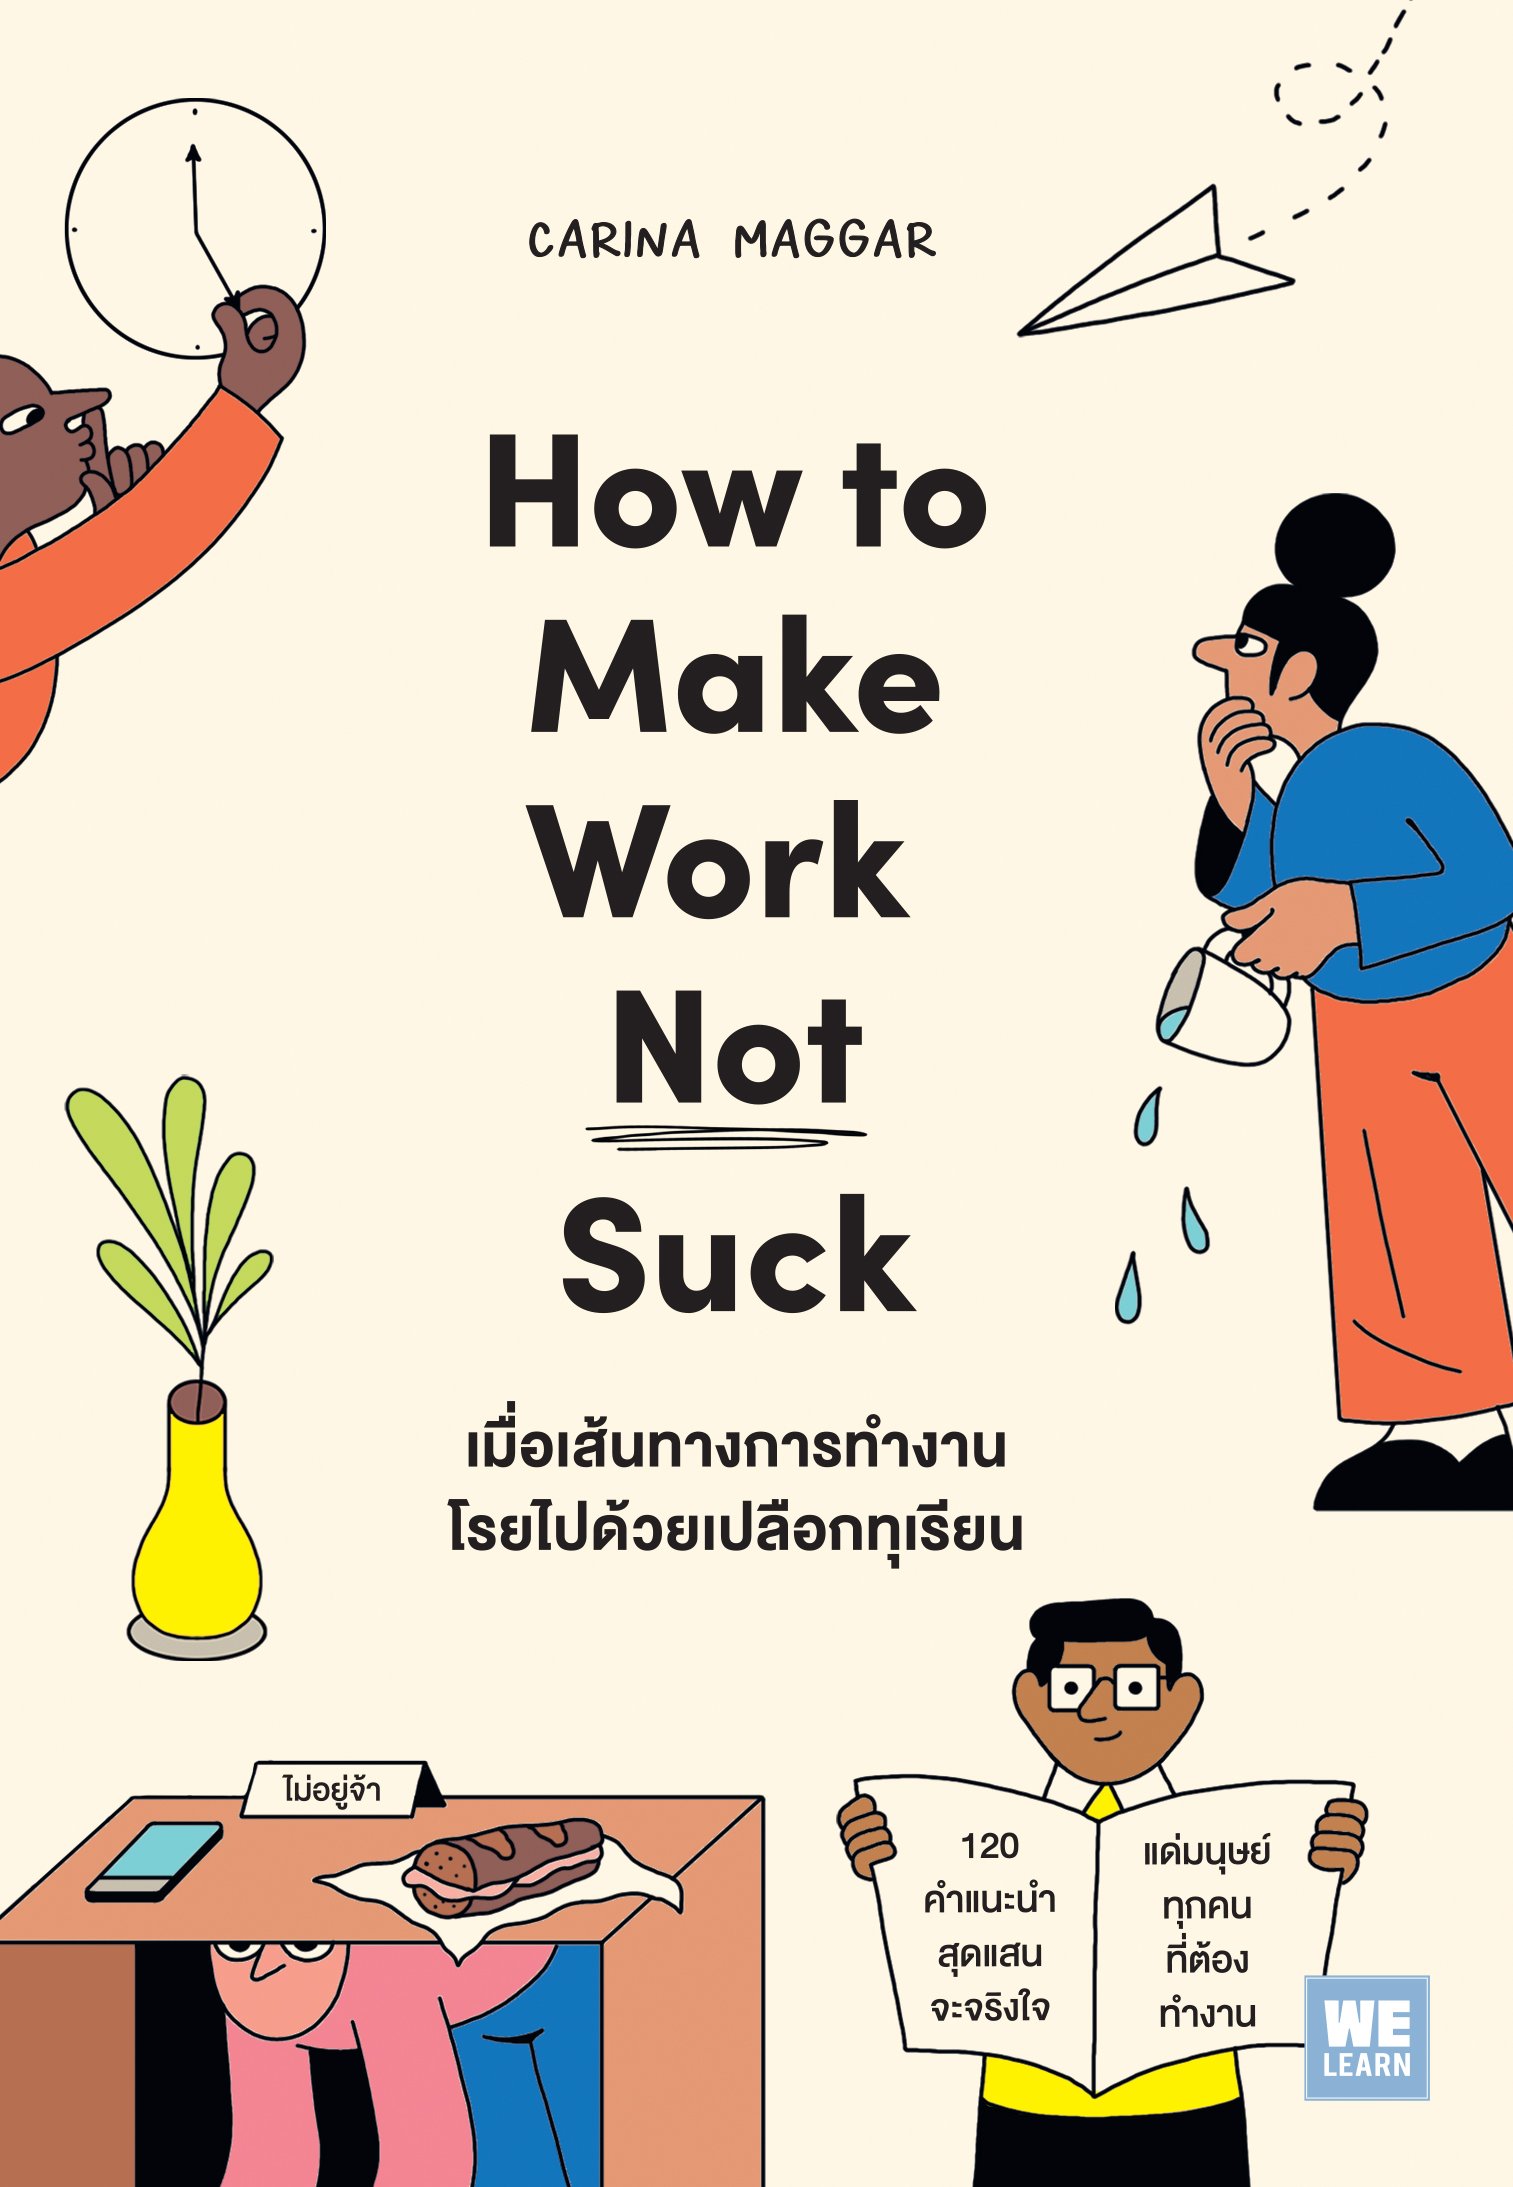 เมื่อเส้นทางการทำงานโรยไปด้วยเปลือกทุเรียน (How to Make Work Not Suck)